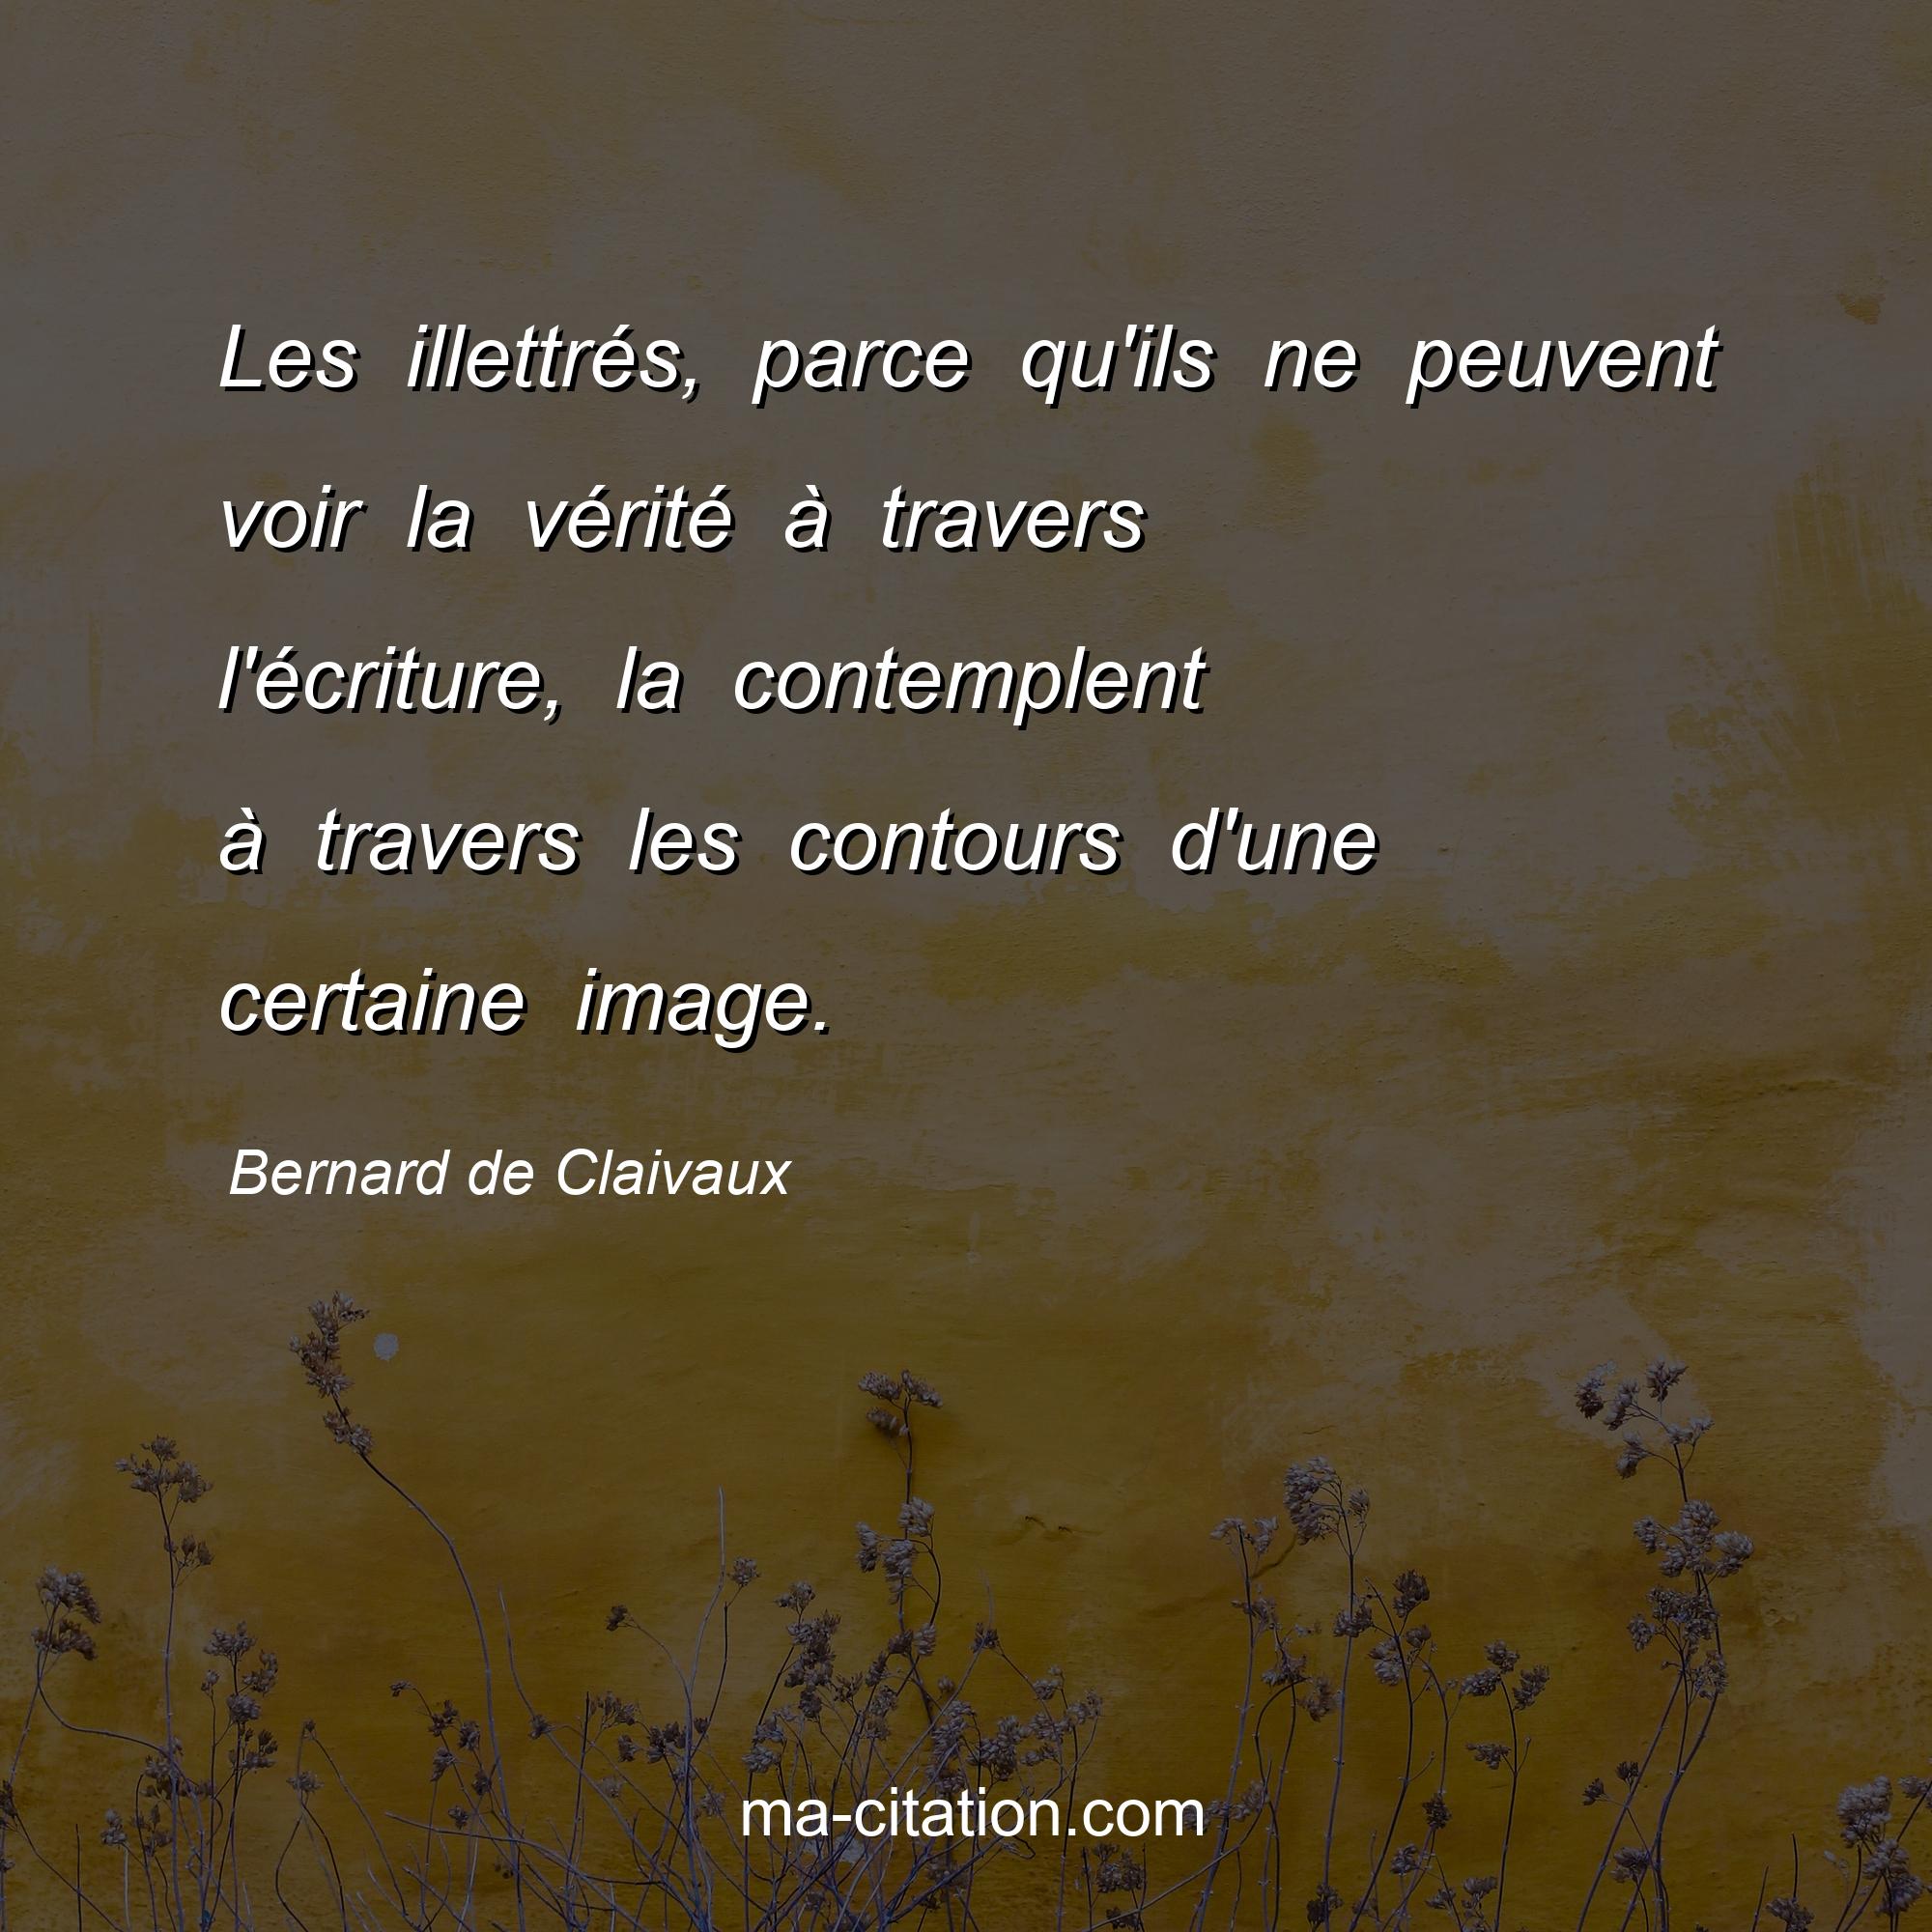 Bernard de Claivaux : Les illettrés, parce qu'ils ne peuvent voir la vérité à travers l'écriture, la contemplent à travers les contours d'une certaine image.